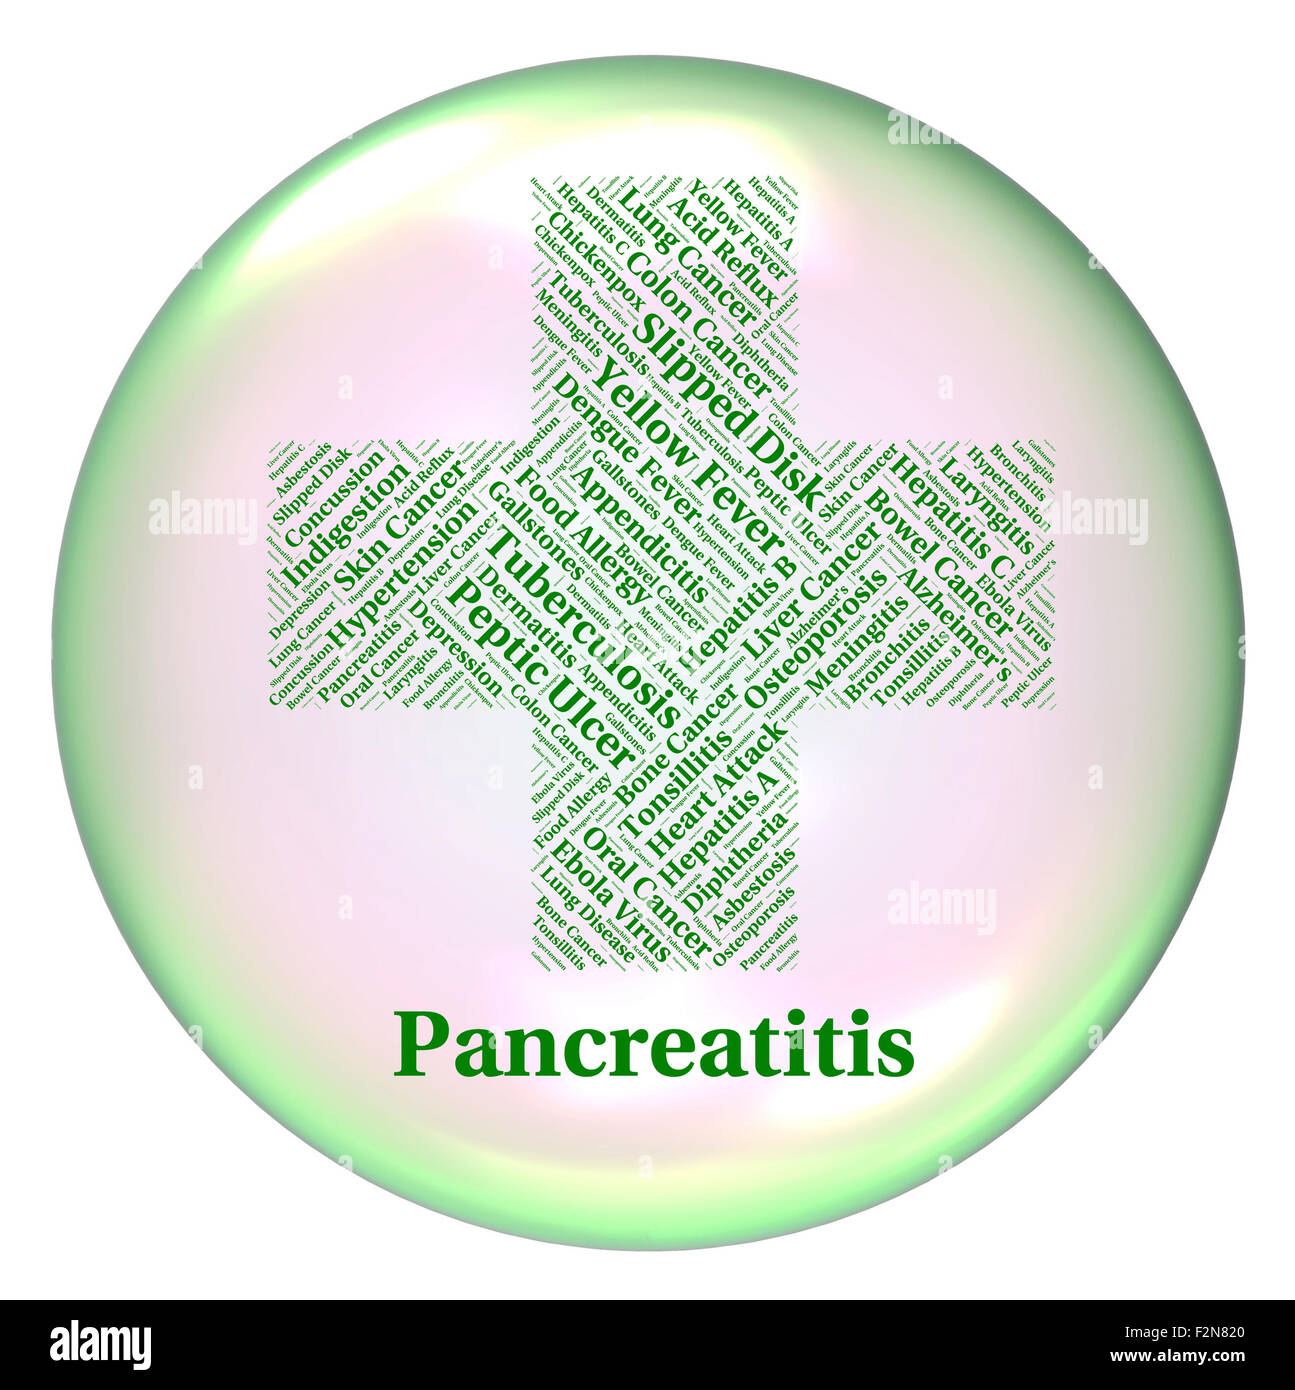 Pankreatitis Krankheit Angabe schlechte Gesundheit und Infektion Stockfoto